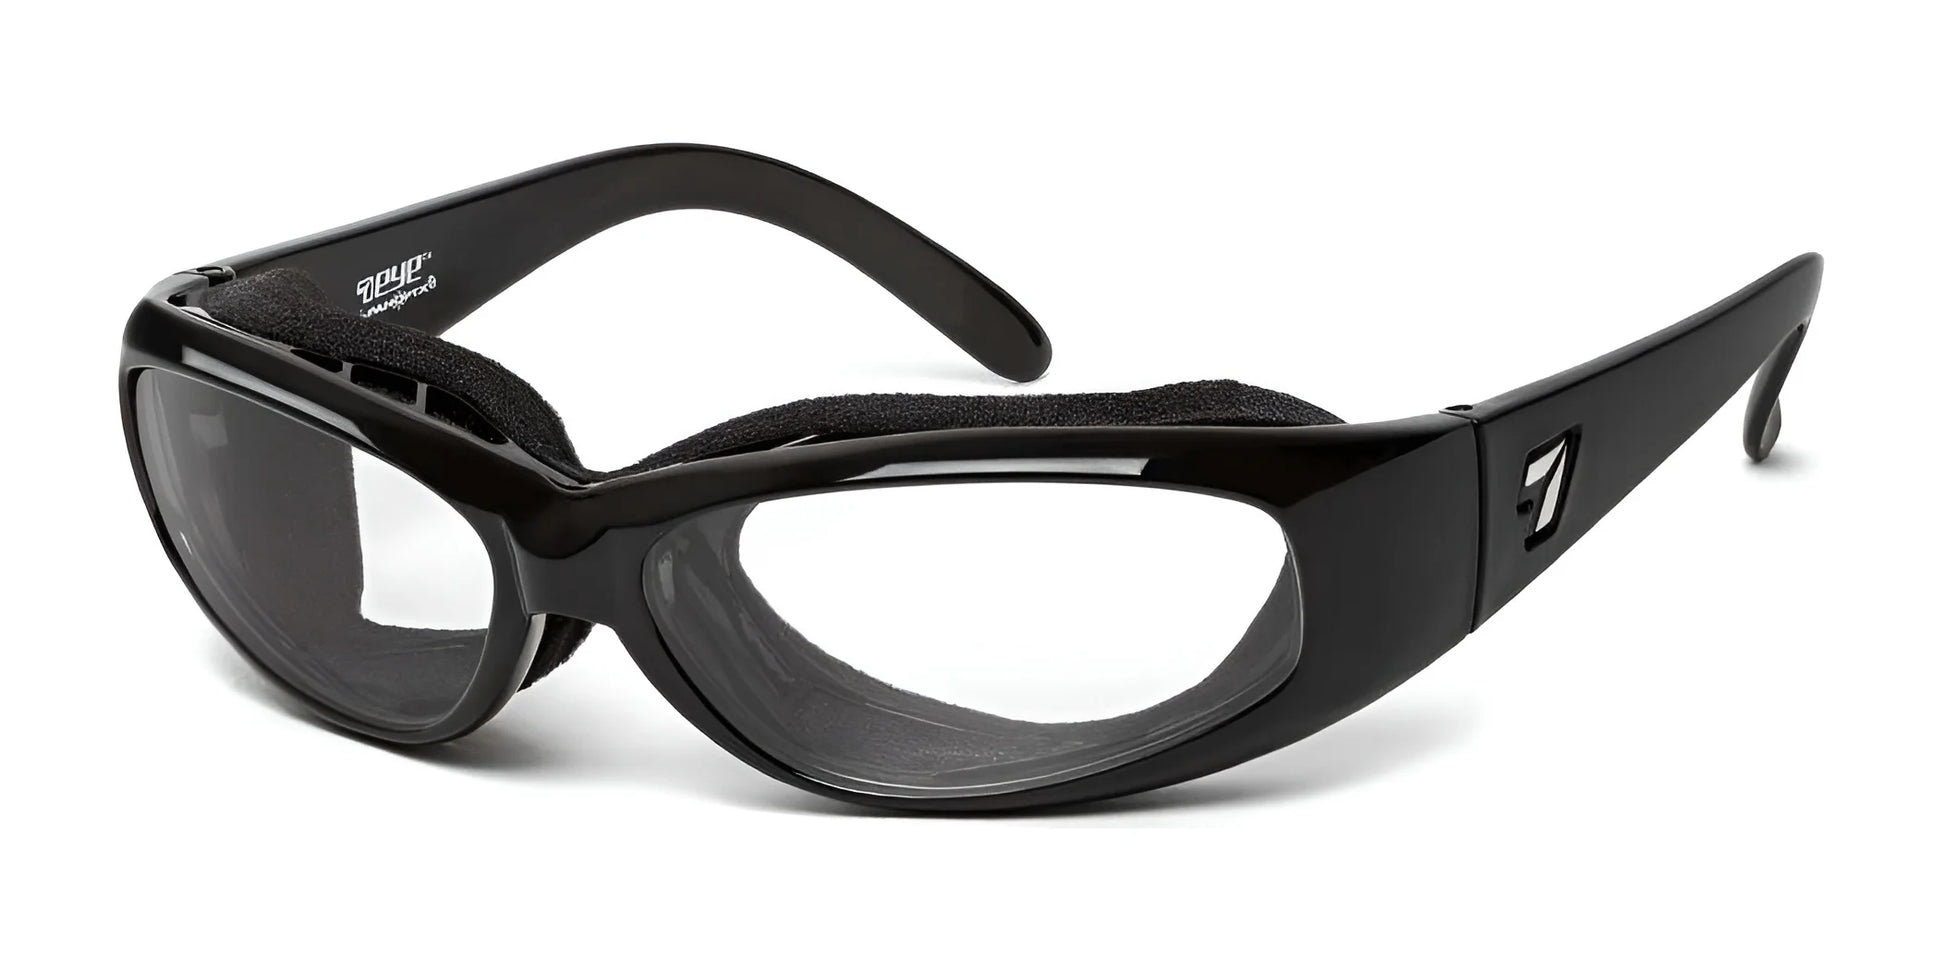 7eye Chubasco Sunglasses Glossy Black / Clear